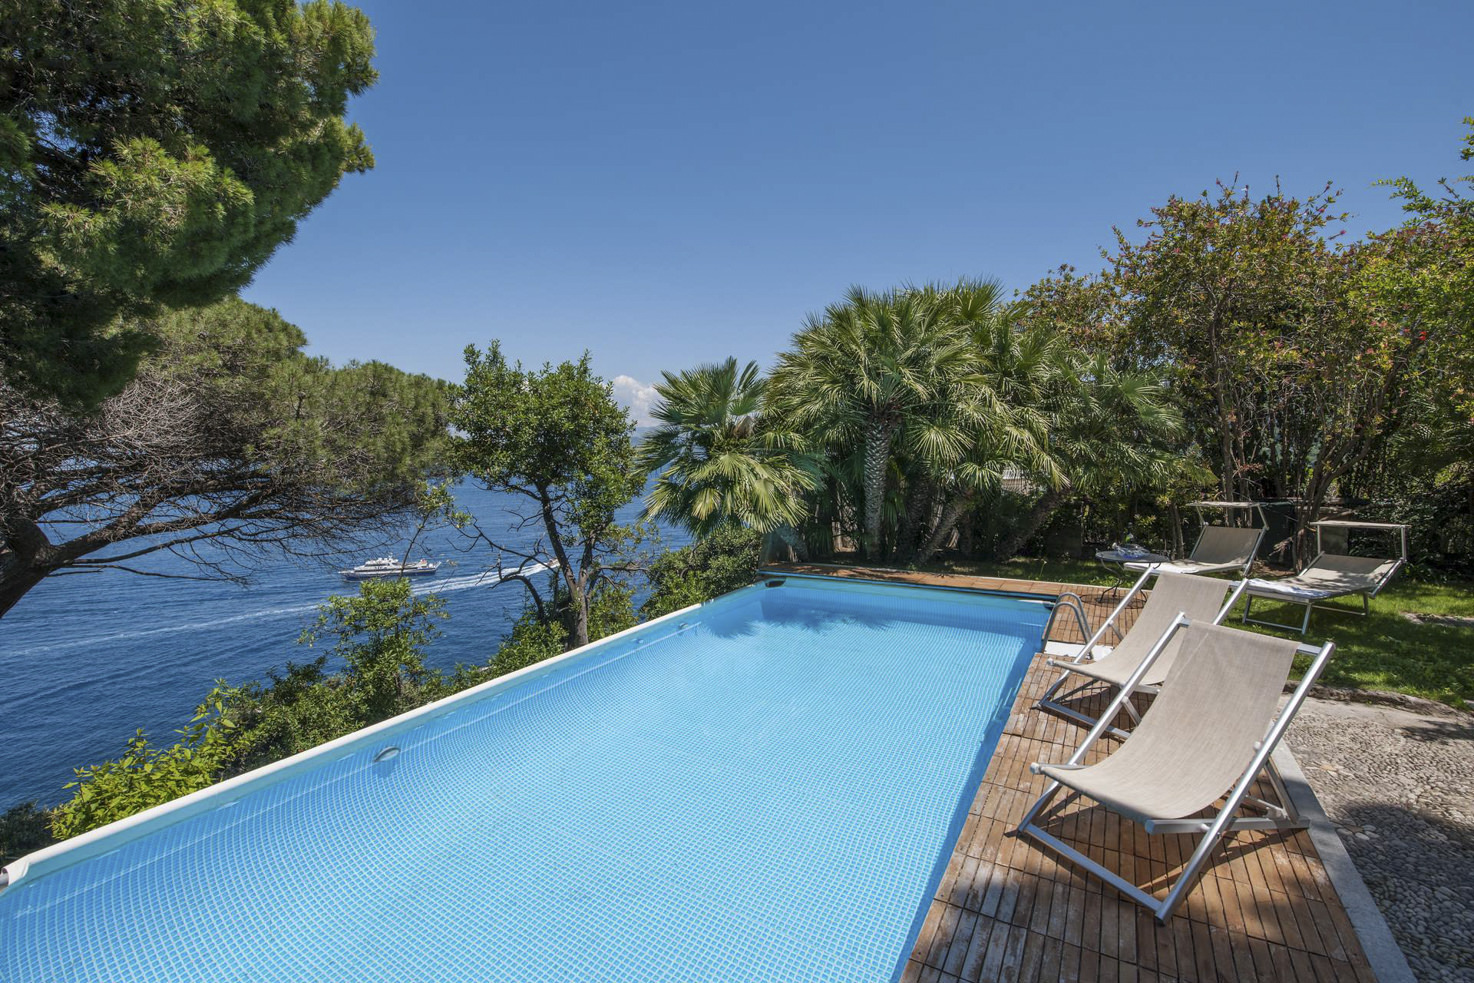 Pool in Capri private Villa